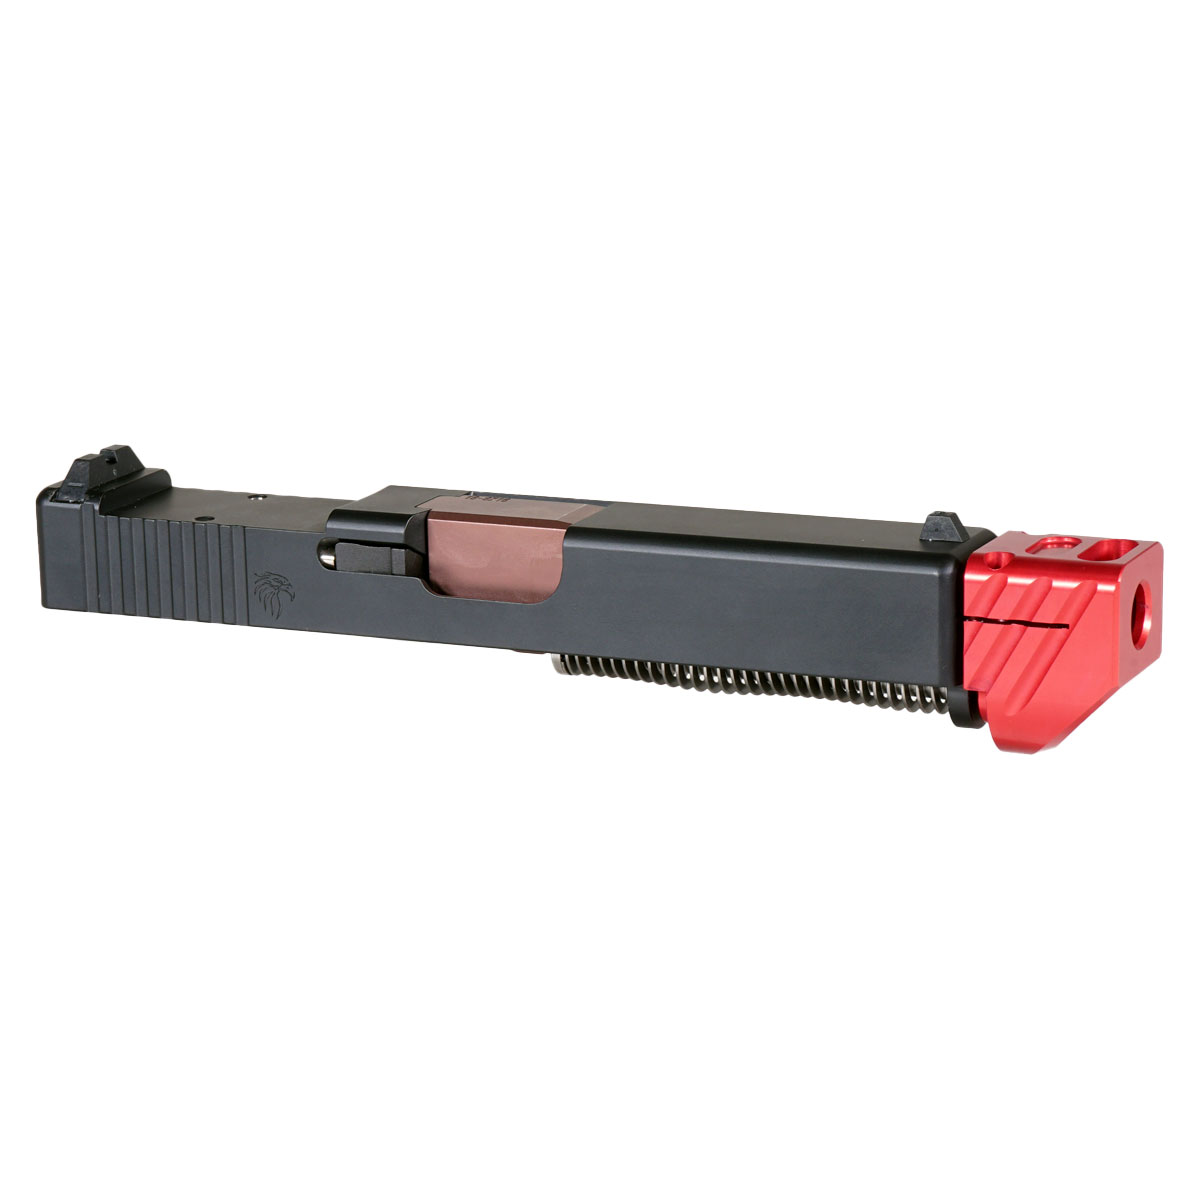 DTT 'Blockbuster V3 w/ Red Compensator' 9mm Complete Slide Kit - Glock 19 Gen 1-3 Compatible